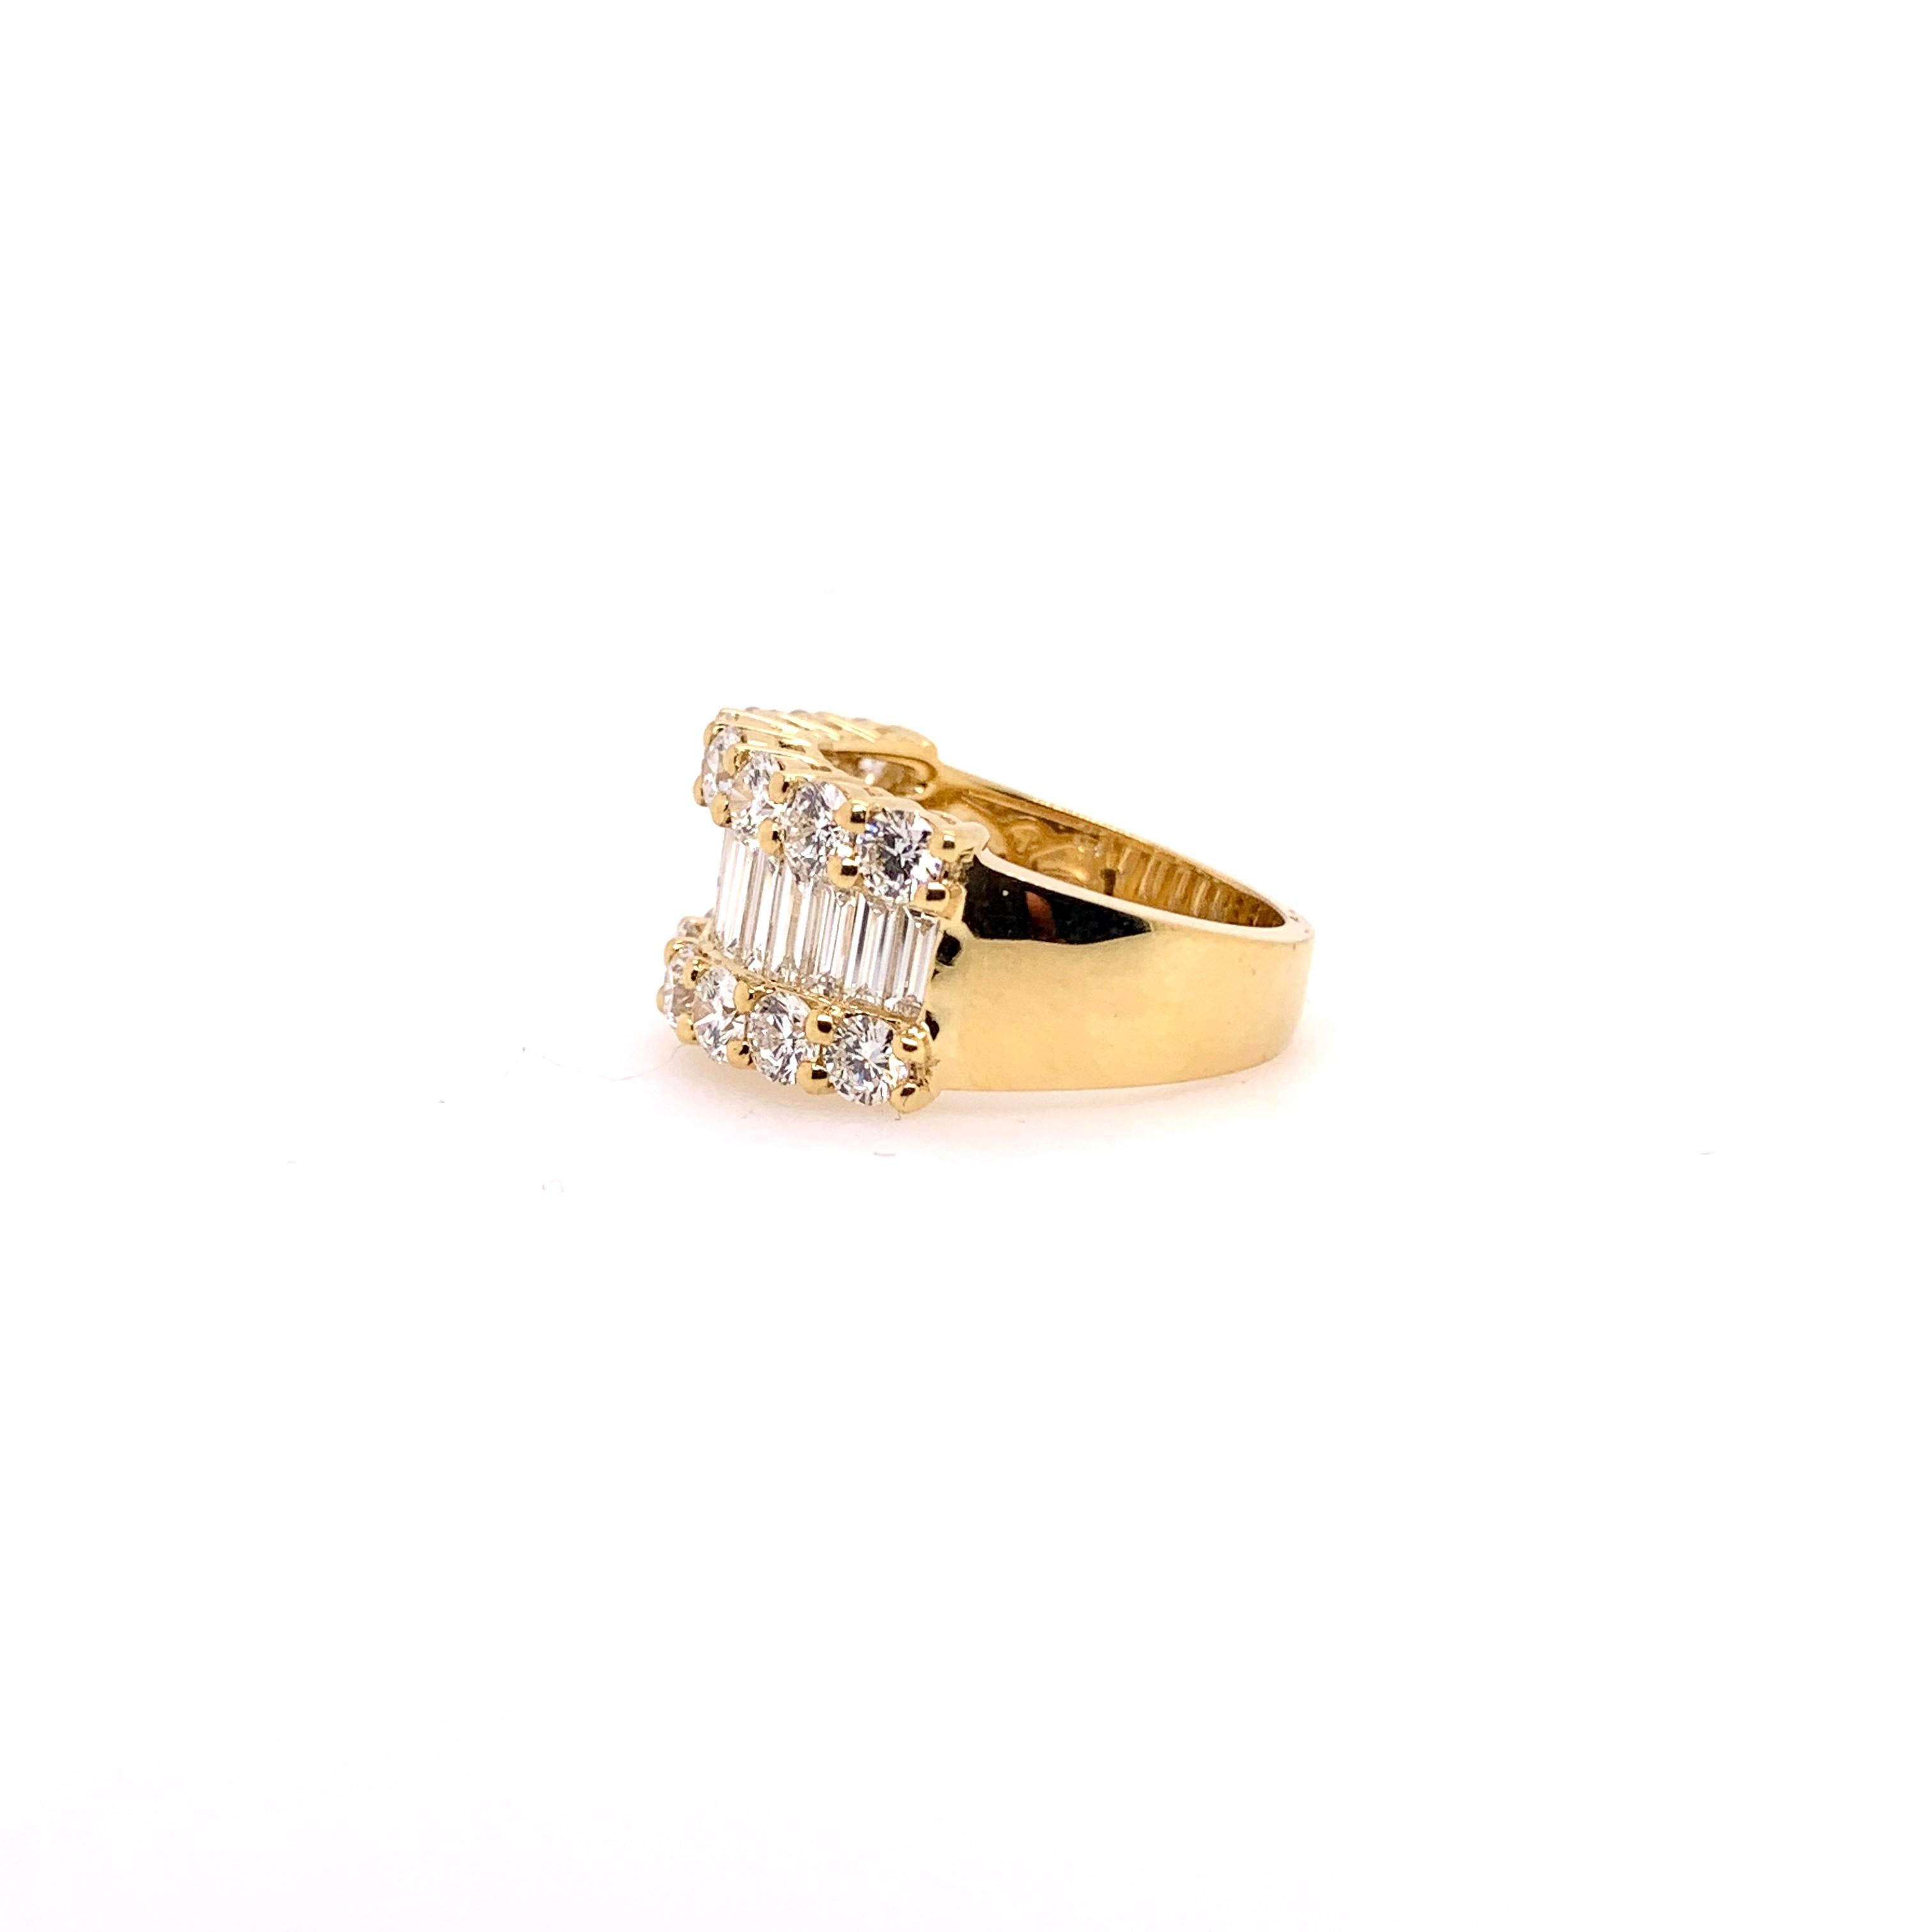 Dieser kultige Ring ist ein Muss für jede Schmucksammlung.  Er besteht aus 18 Karat Gelbgold und ist mit 3,46 Karat großen runden Diamanten und Baguettes besetzt, die die Kombination aus Form und Funktion perfektionieren. 


Ringgröße : 6.5 (kann in